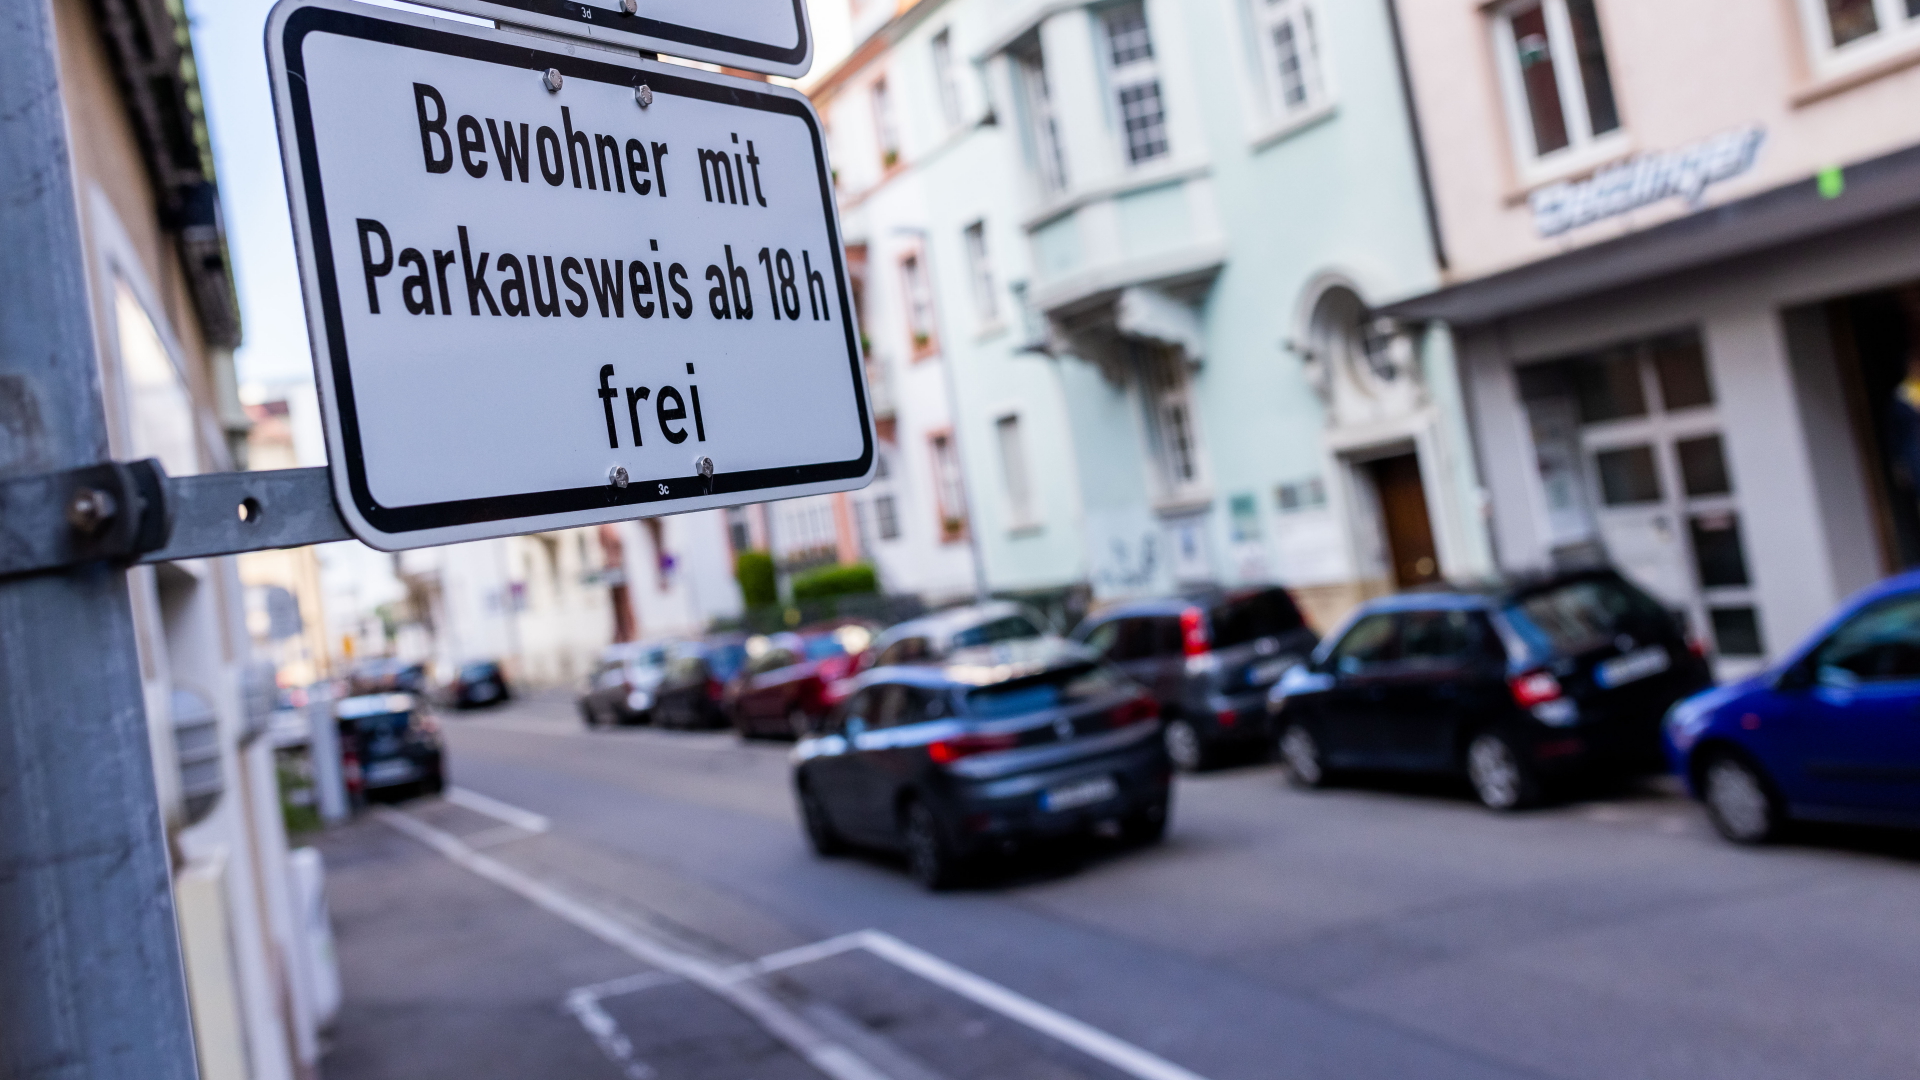  Ein Schild mit der Aufschrift «Bewohner mit Parkausweis frei» kennzeichnet eine Zone mit Anwohnerparkberechtigungen in Freiburg | dpa